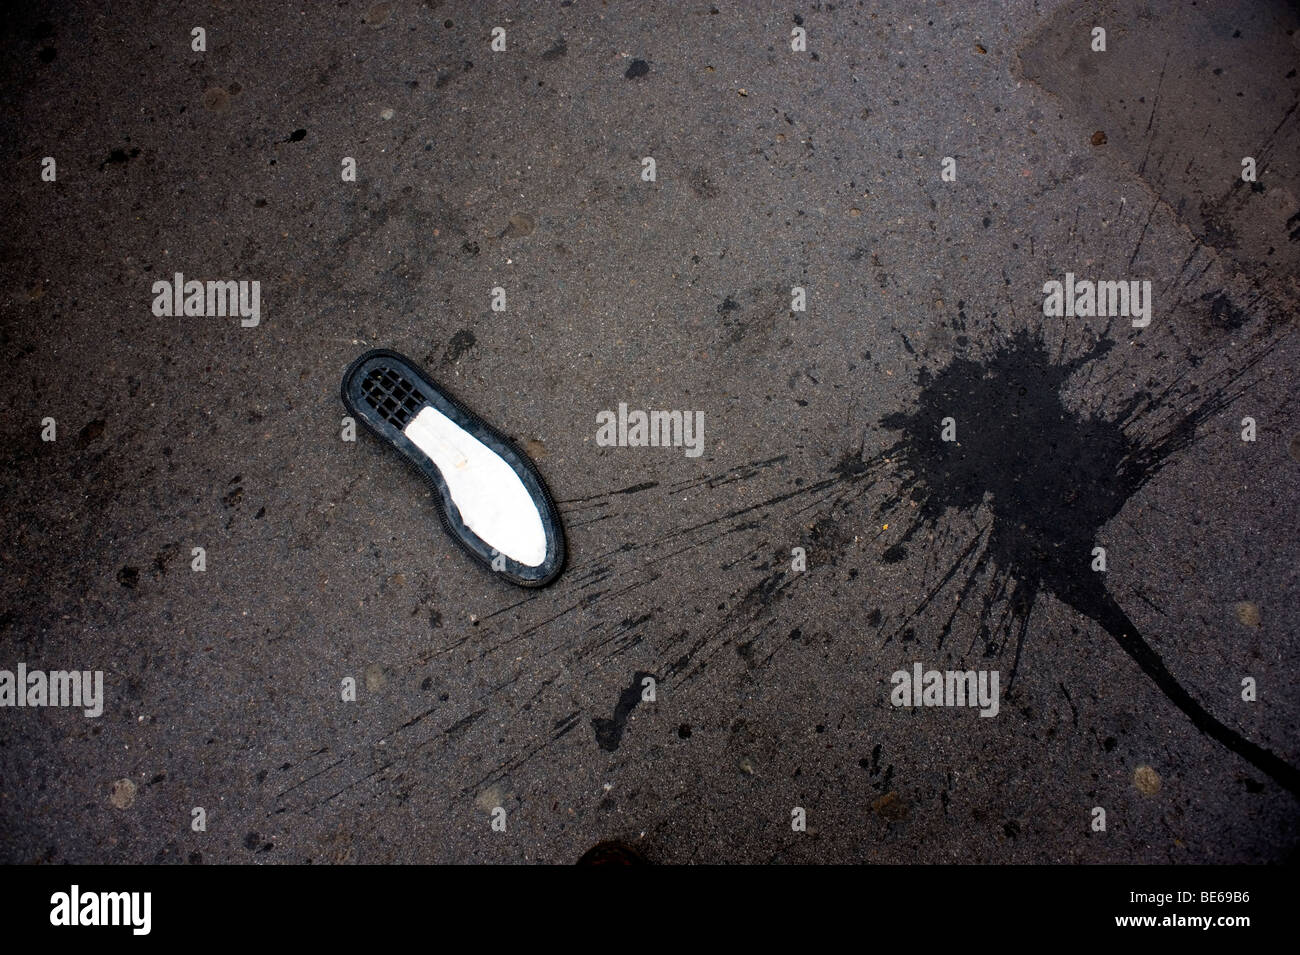 Shoe splat on a pavement, London. Stock Photo